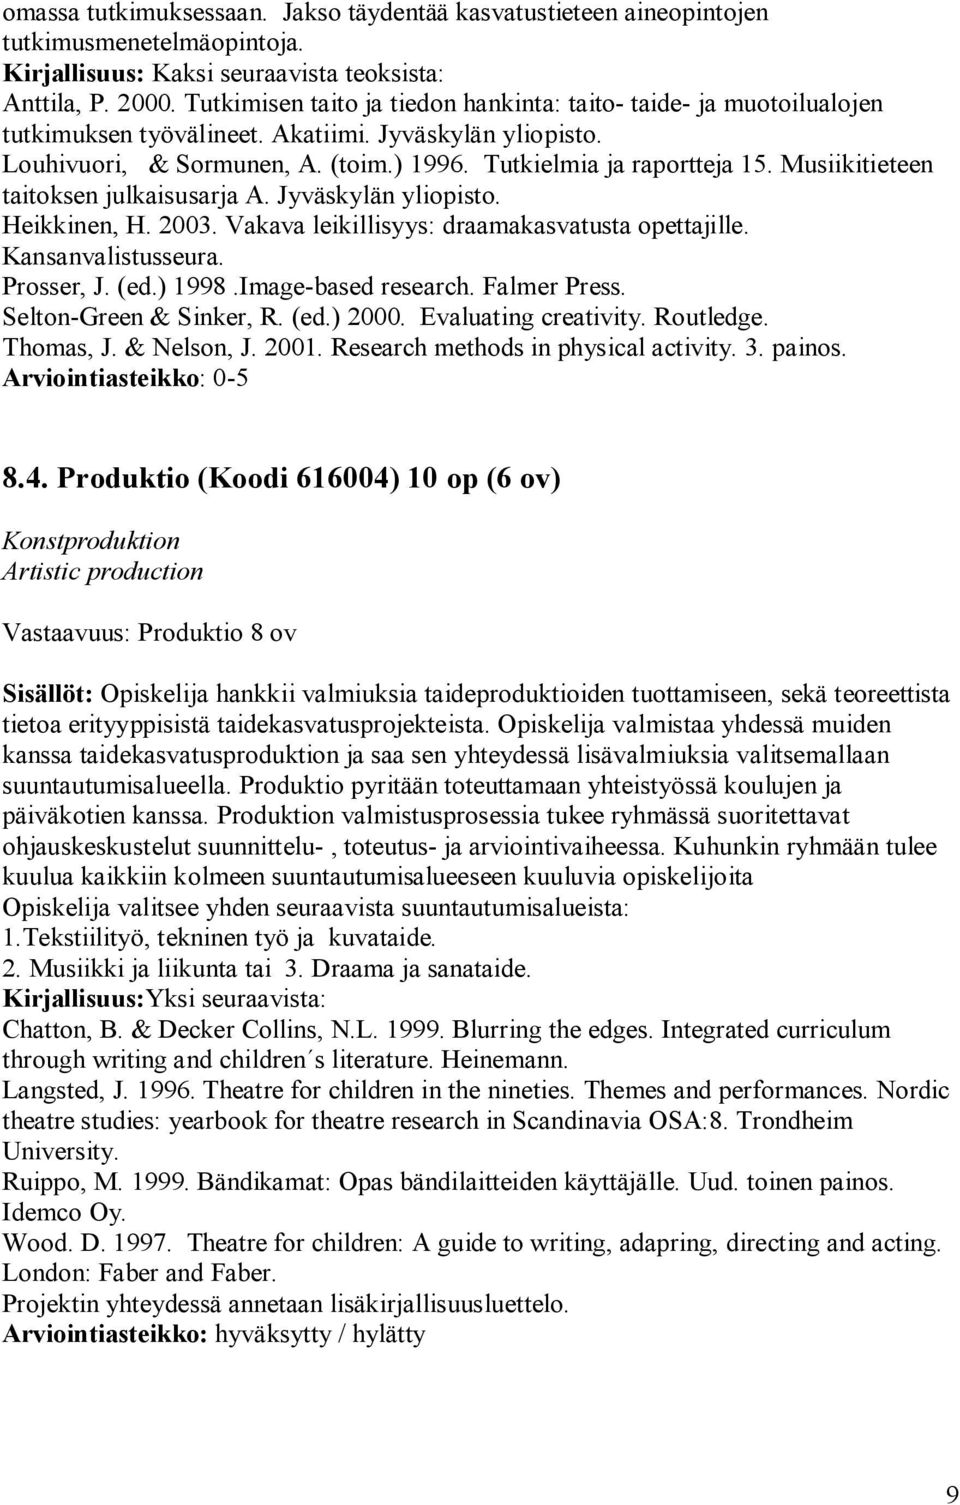 Musiikitieteen taitoksen julkaisusarja A. Jyväskylän yliopisto. Heikkinen, H. 2003. Vakava leikillisyys: draamakasvatusta opettajille. Kansanvalistusseura. Prosser, J. (ed.) 1998.Image based research.